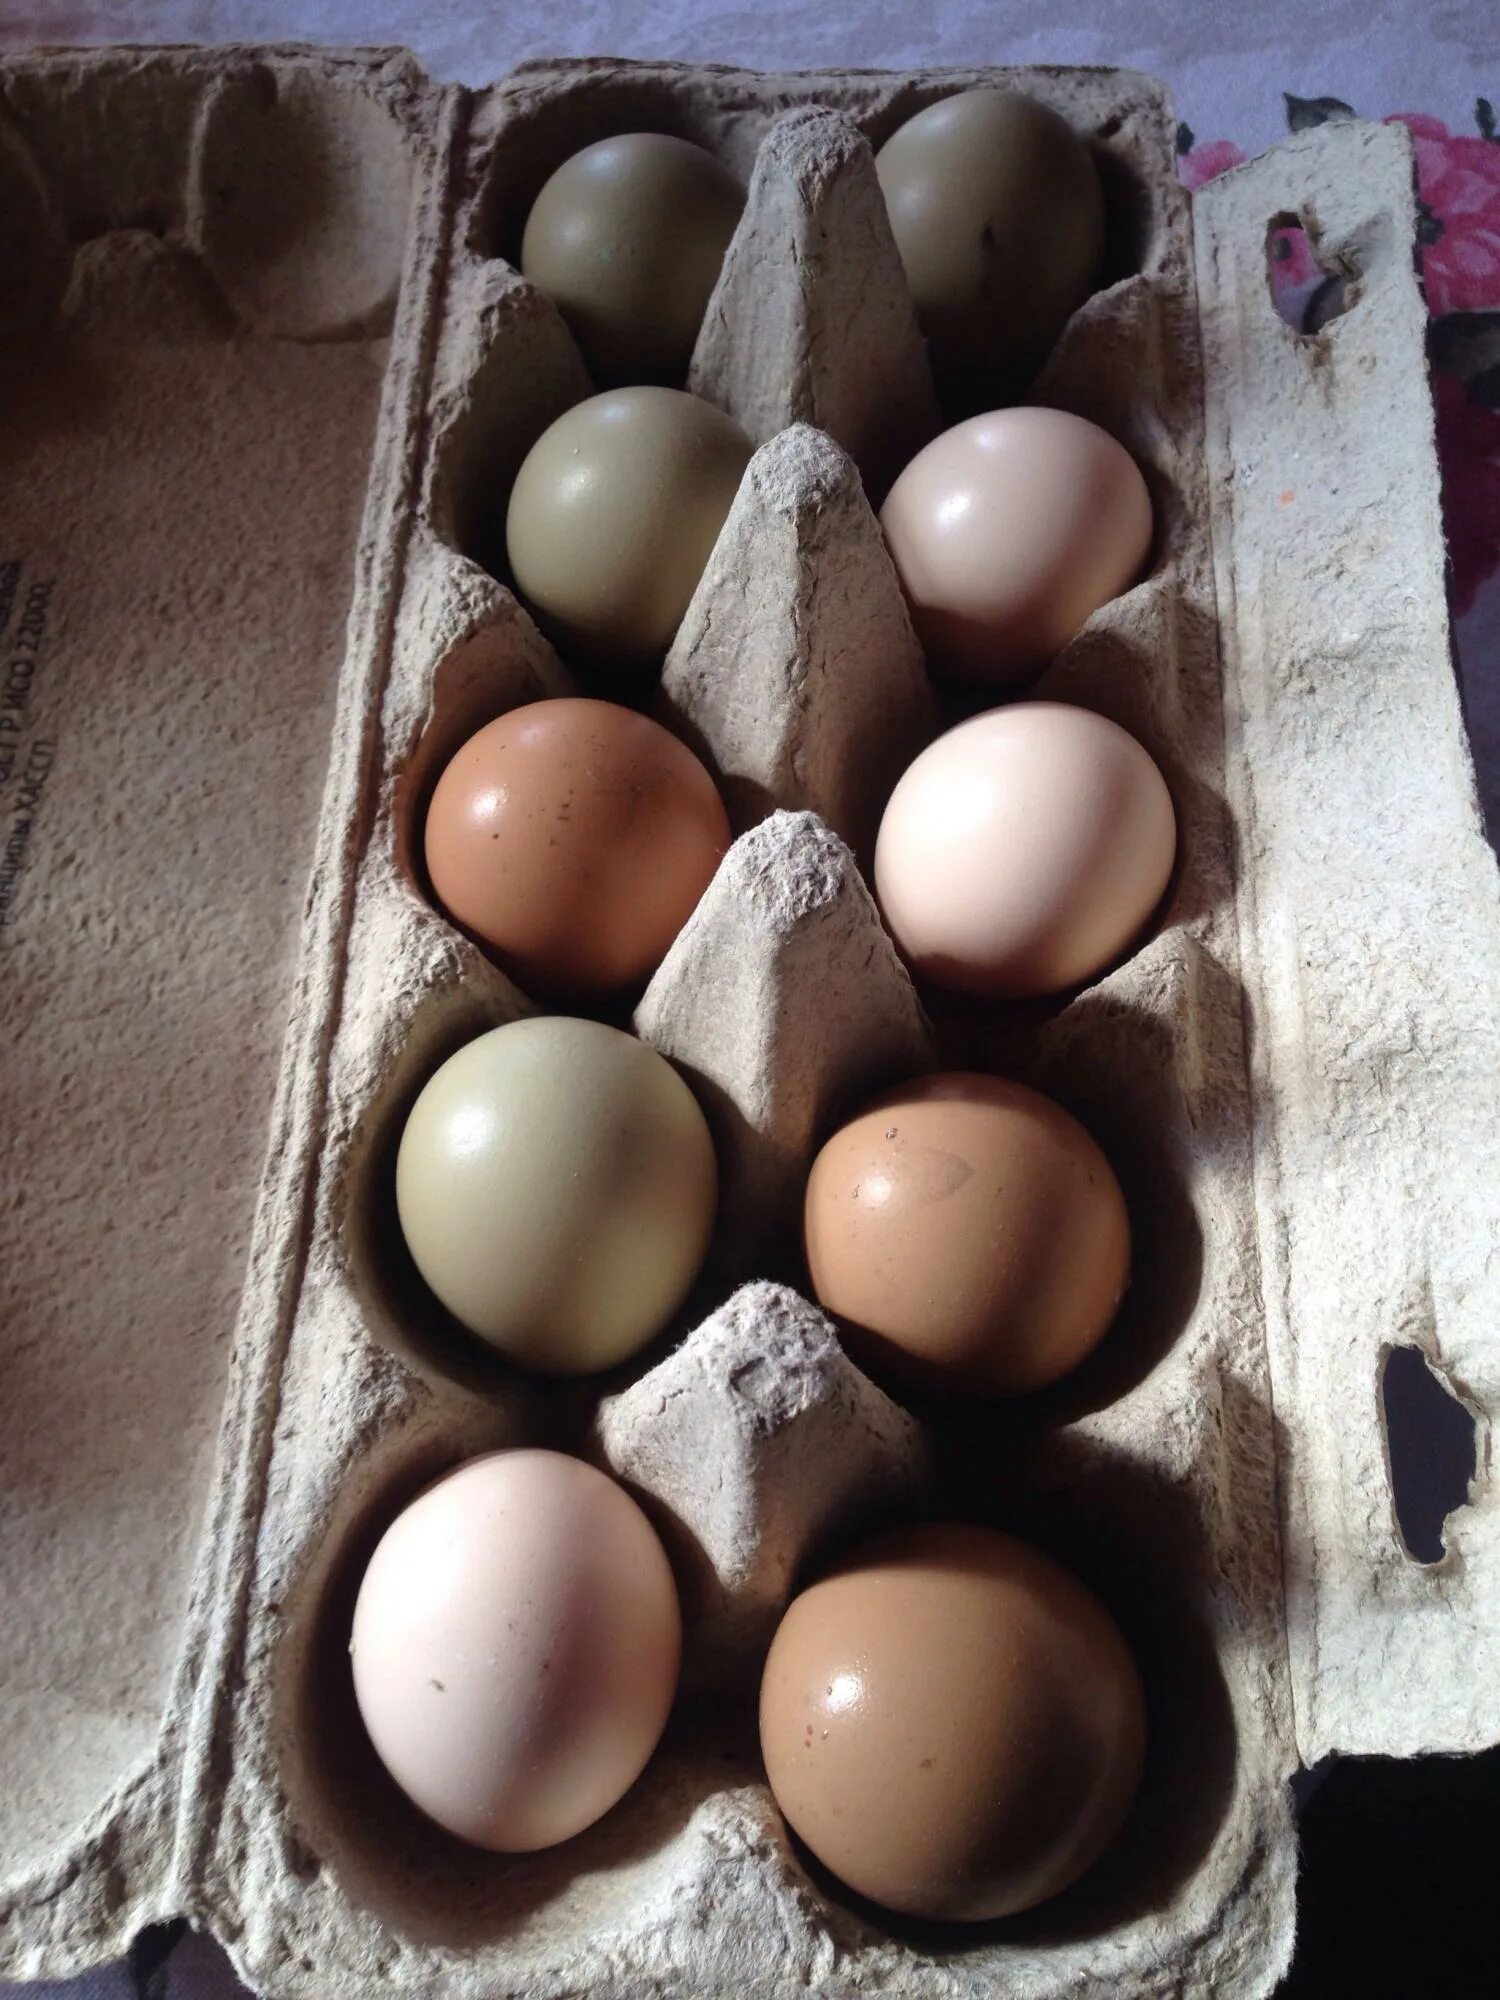 Яйцо фазана инкубационное. Инкубация фазаньих яиц. Маркировка инкубационного яйца f7203. Яйцо фазана румынского.